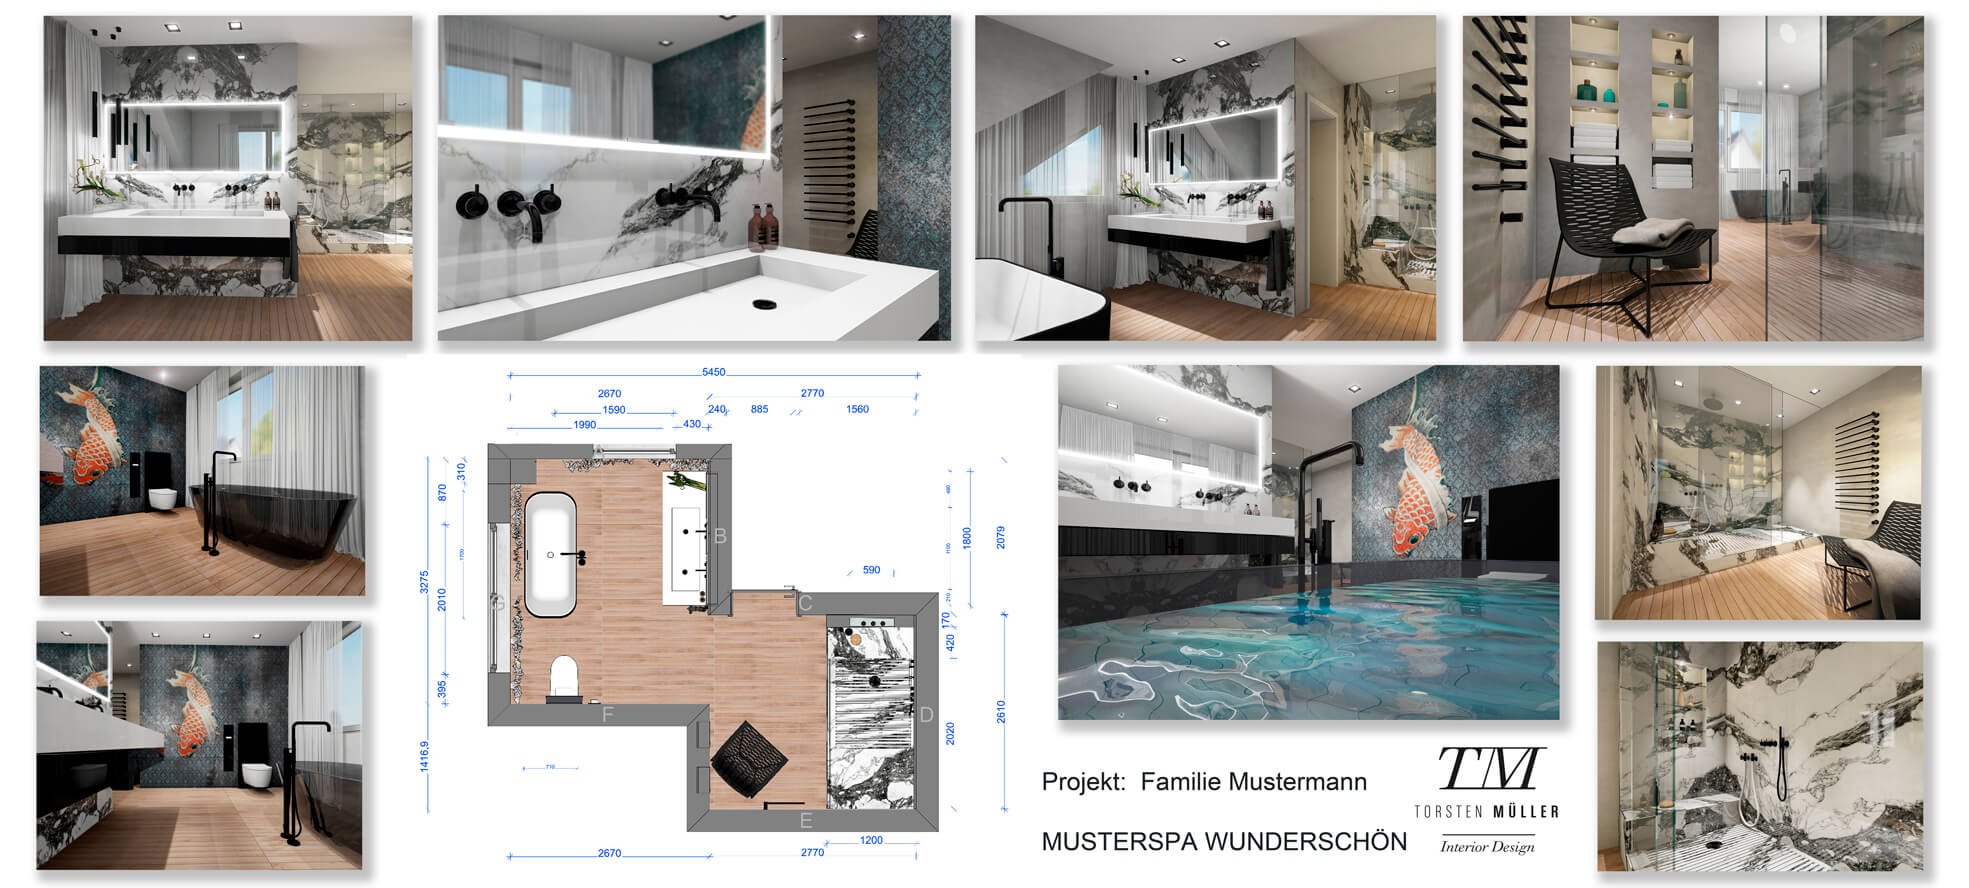 Design Bad by Torsten Müller – Über 25 Jahre Expertise für Ihre individuelle Badplanung. Qualität, Kreativität und exklusives Design für Ihr Traumbad.